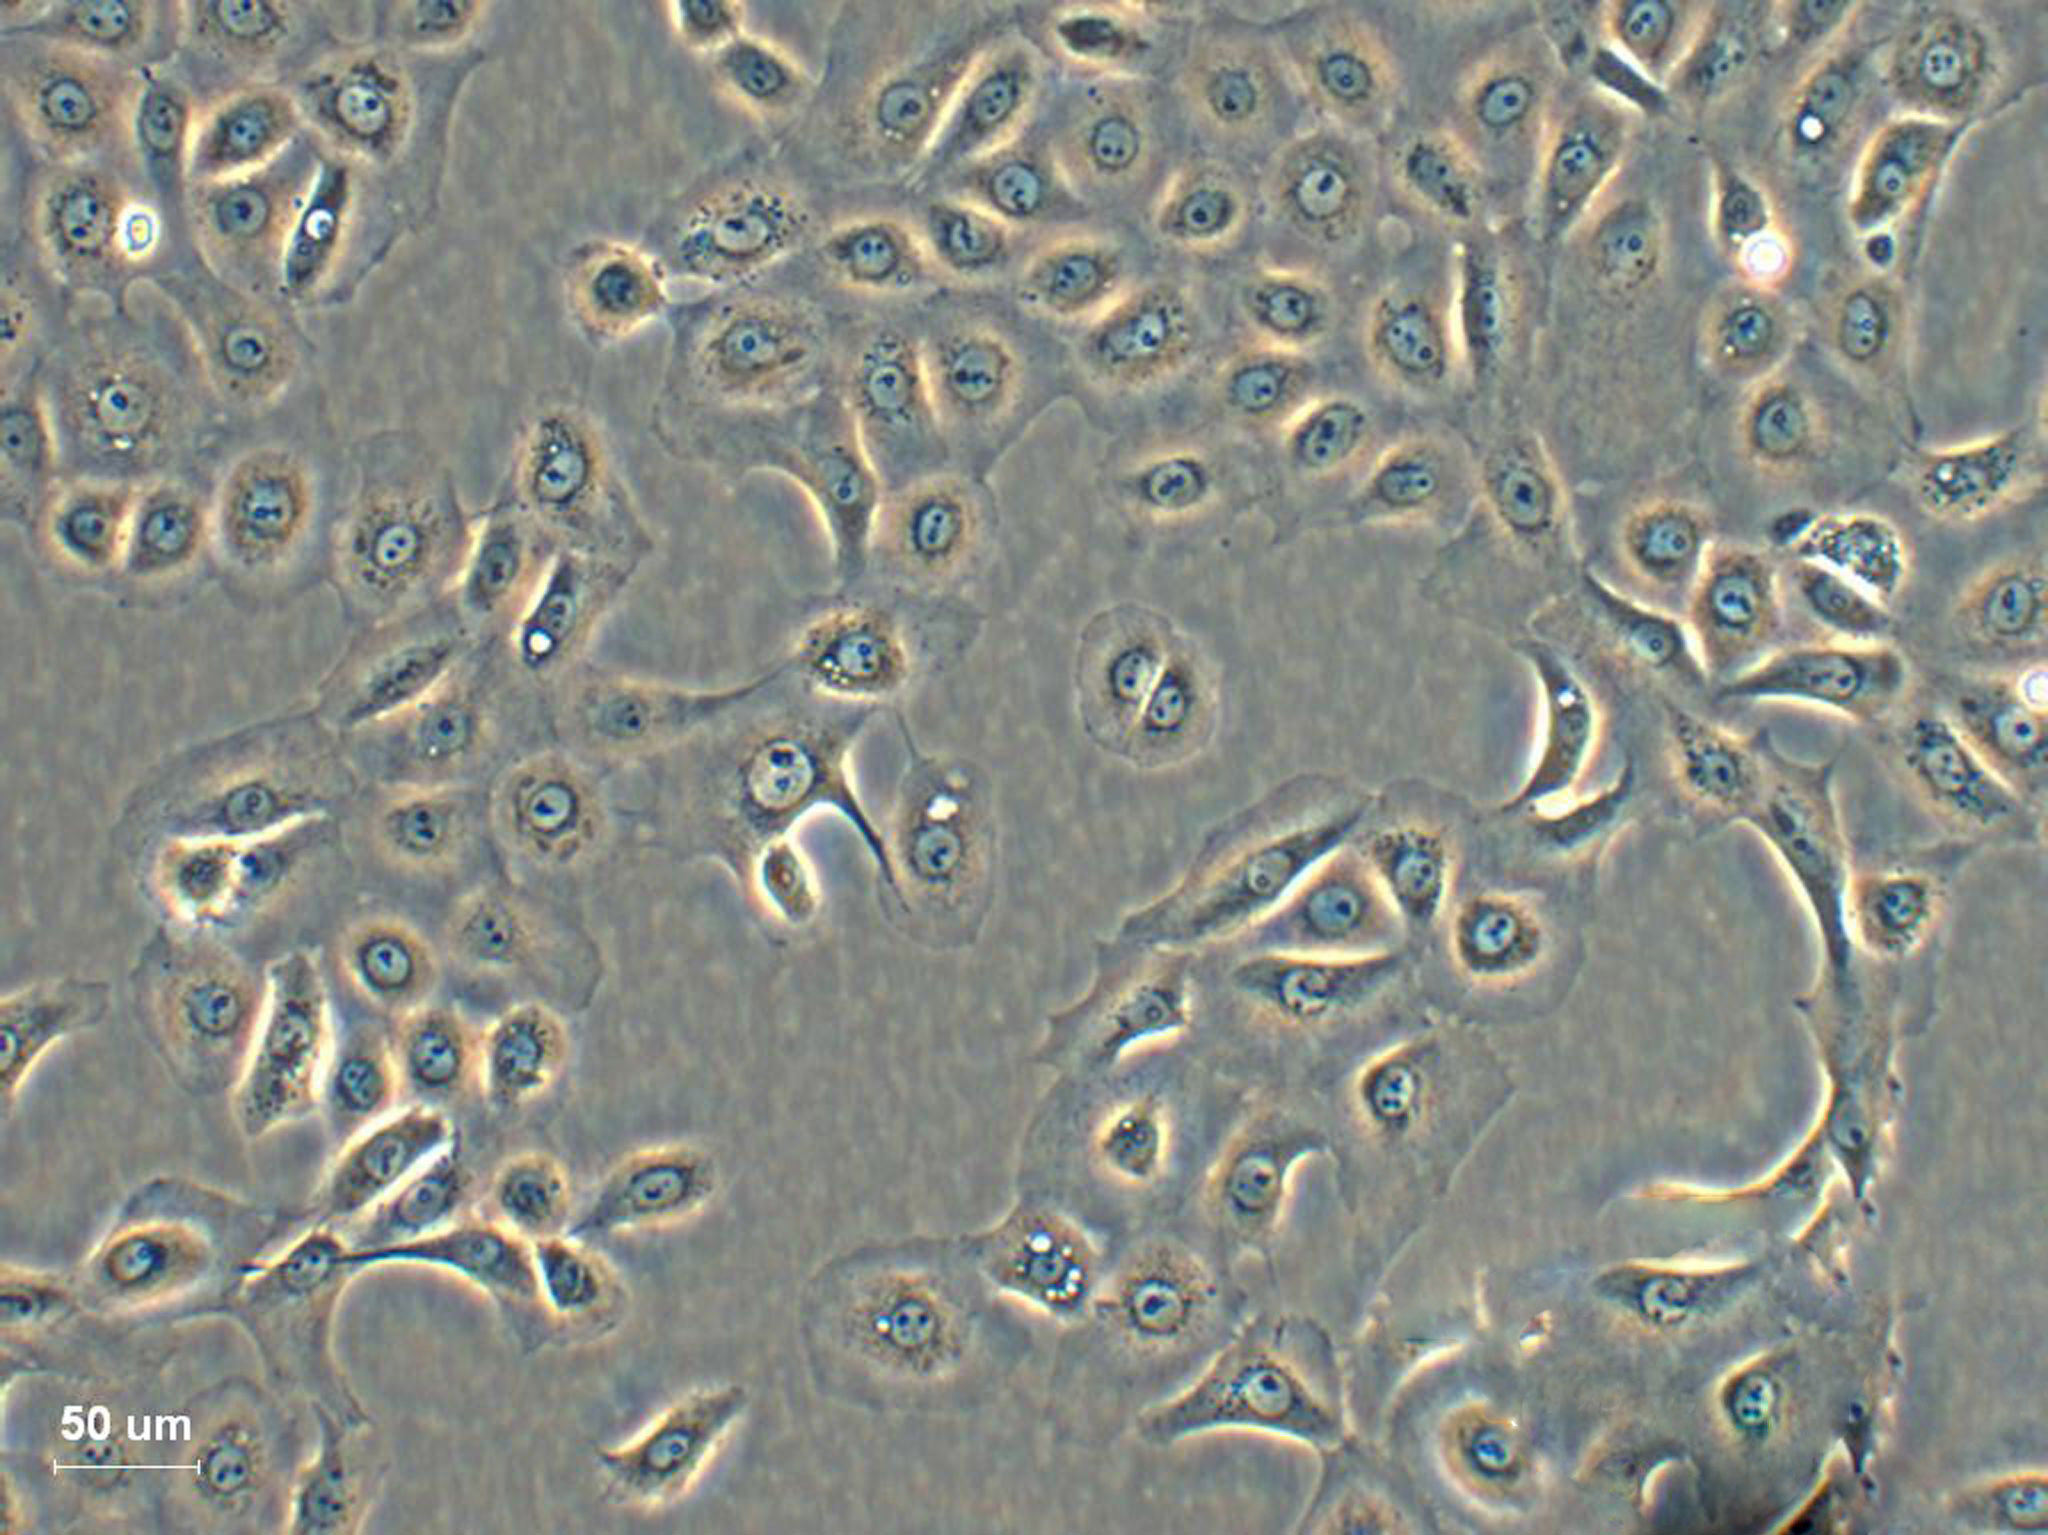 KE-39 epithelioid cells人胃癌细胞系,KE-39 epithelioid cells